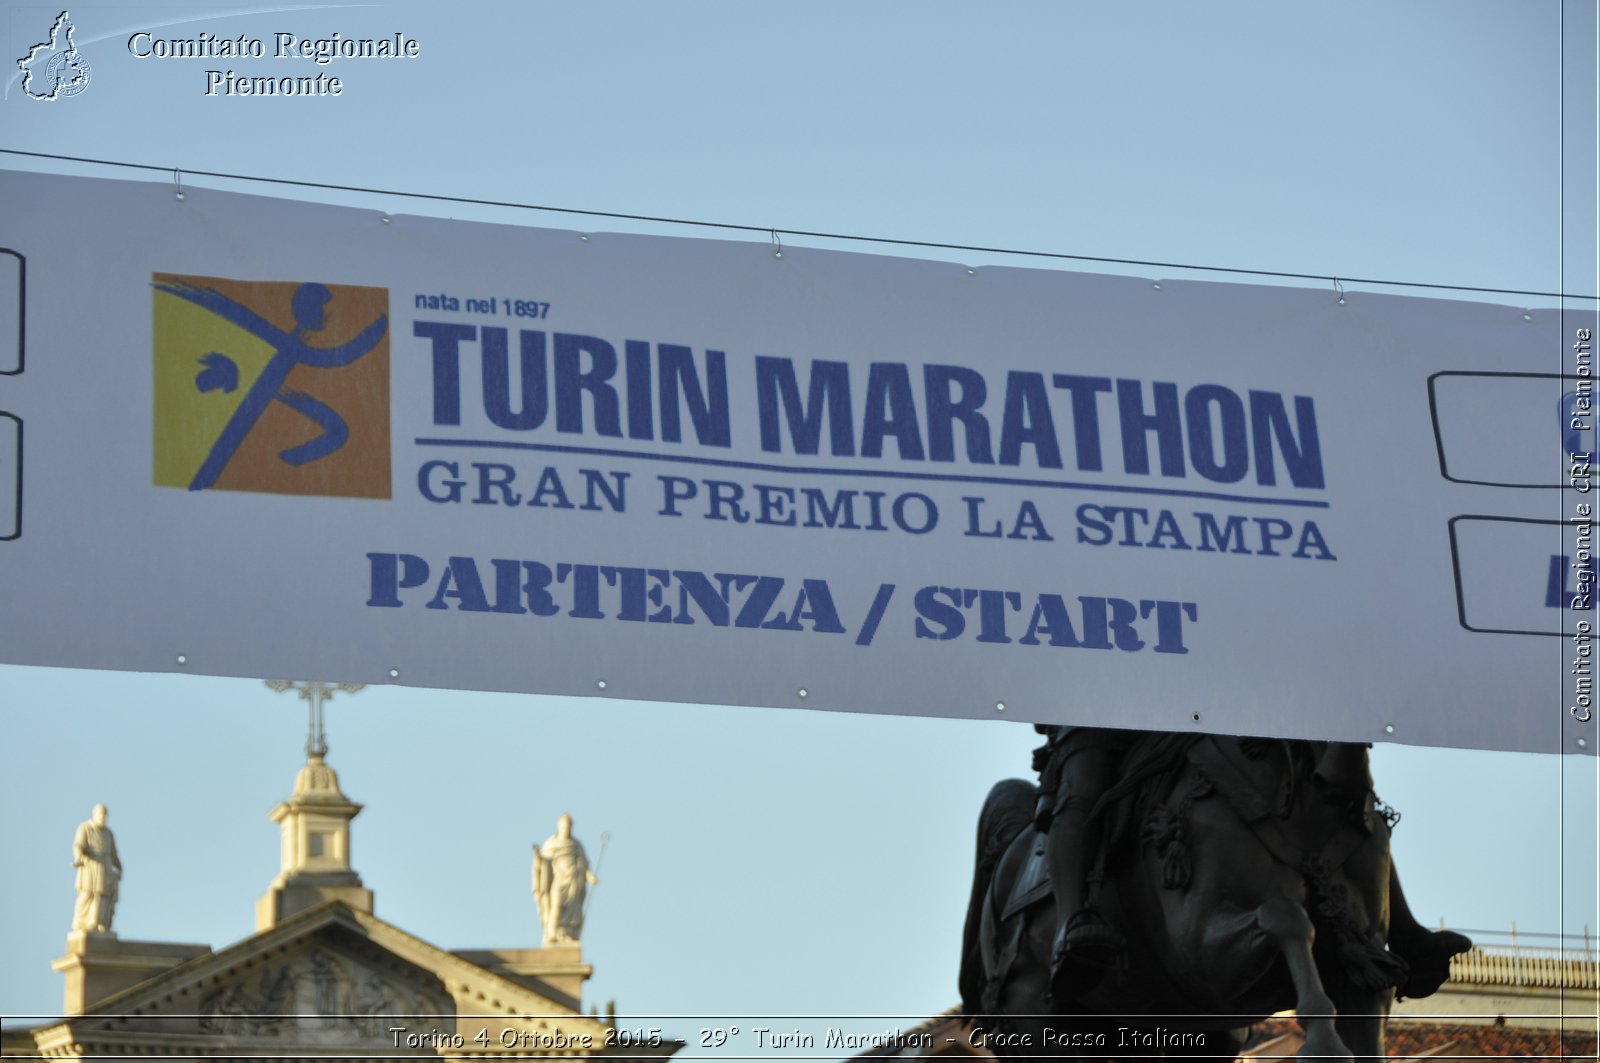 Torino 4 Ottobre 2015 - 29 Turin Marathon - Croce Rossa Italiana- Comitato Regionale del Piemonte